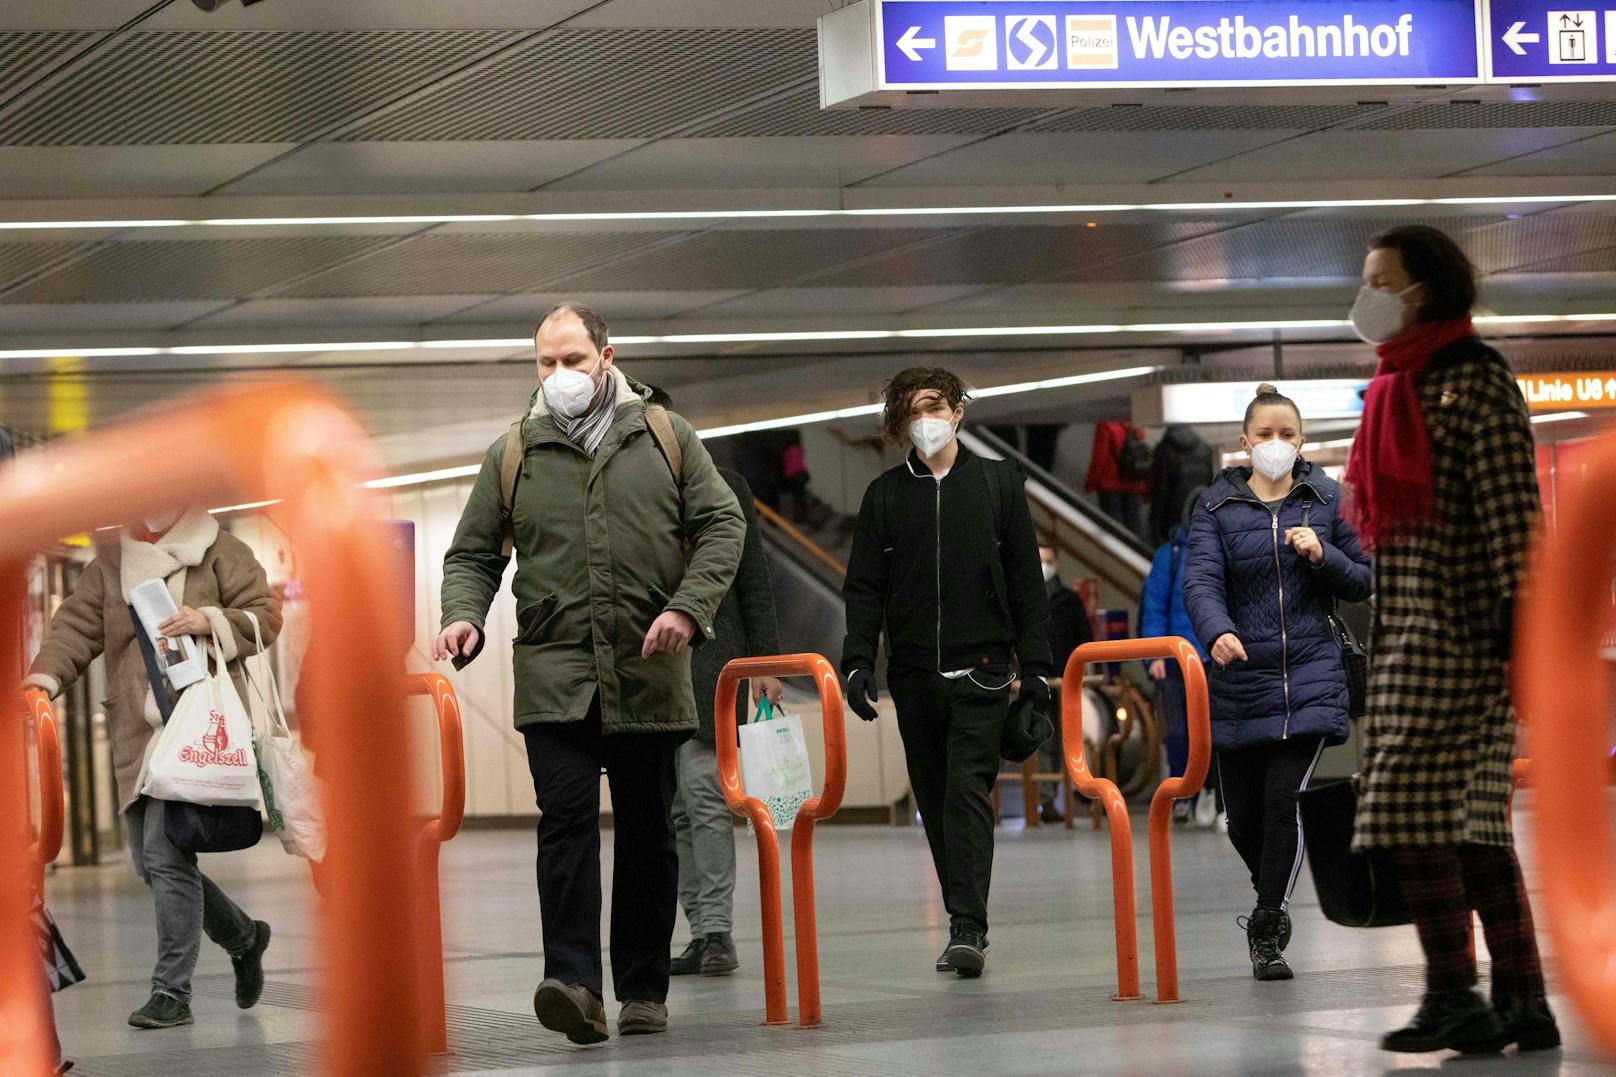 Zwei besonders renitente Masken-Verweigerer wurden am Wiener Westbahnhof festgenommen.